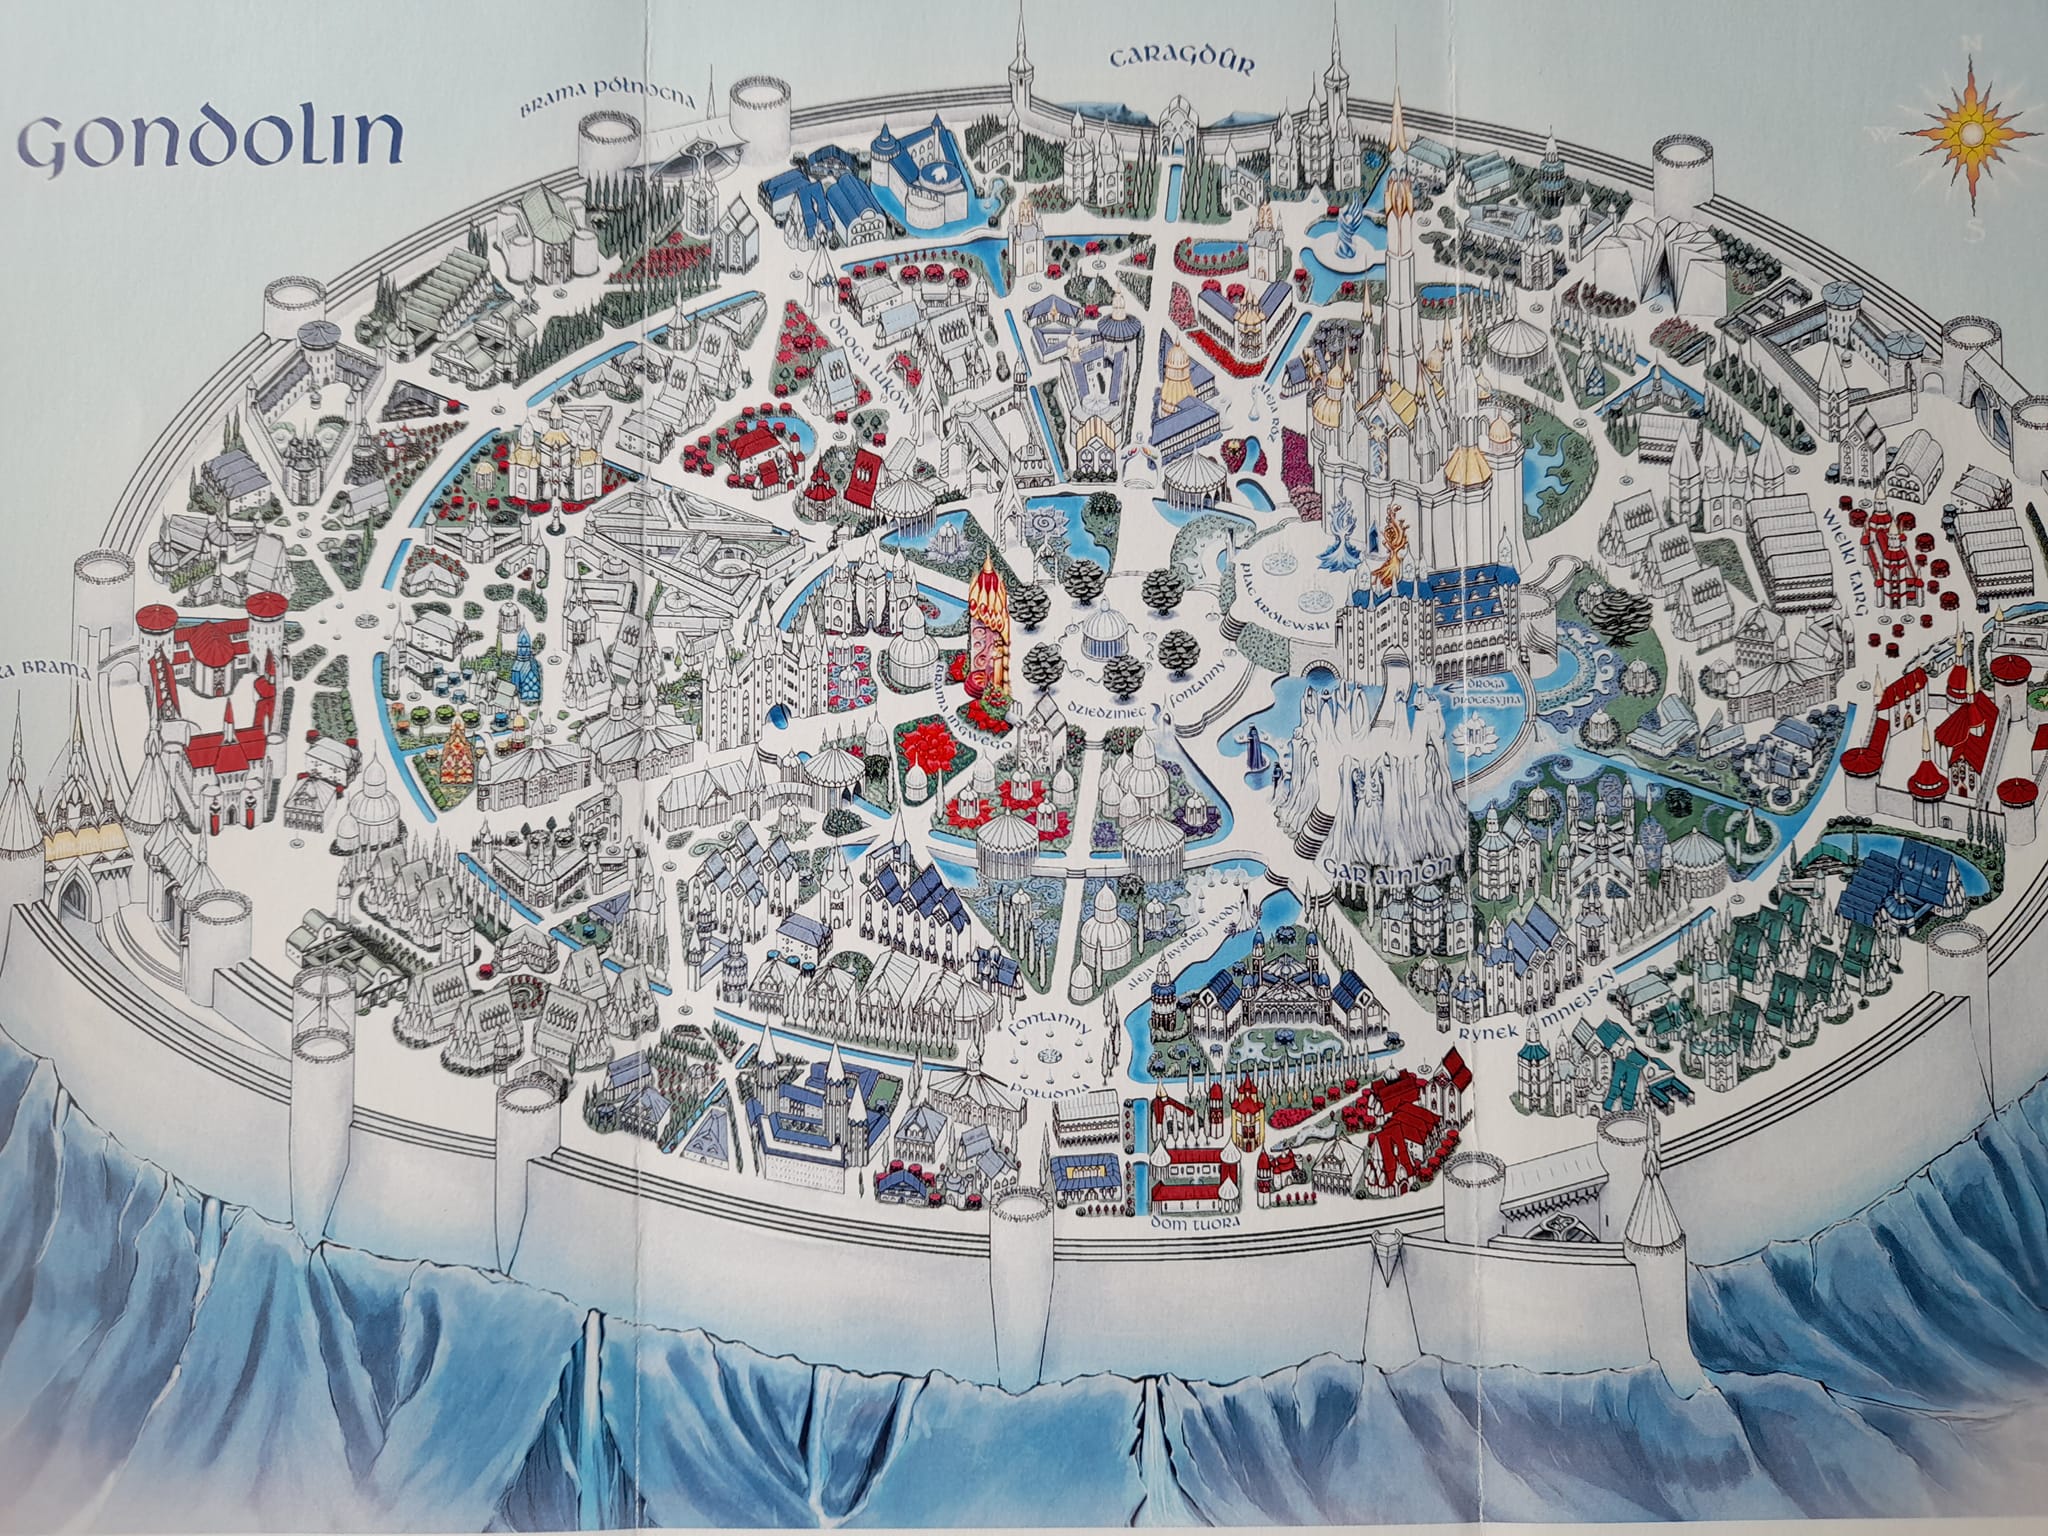 Mapy Gondolinu